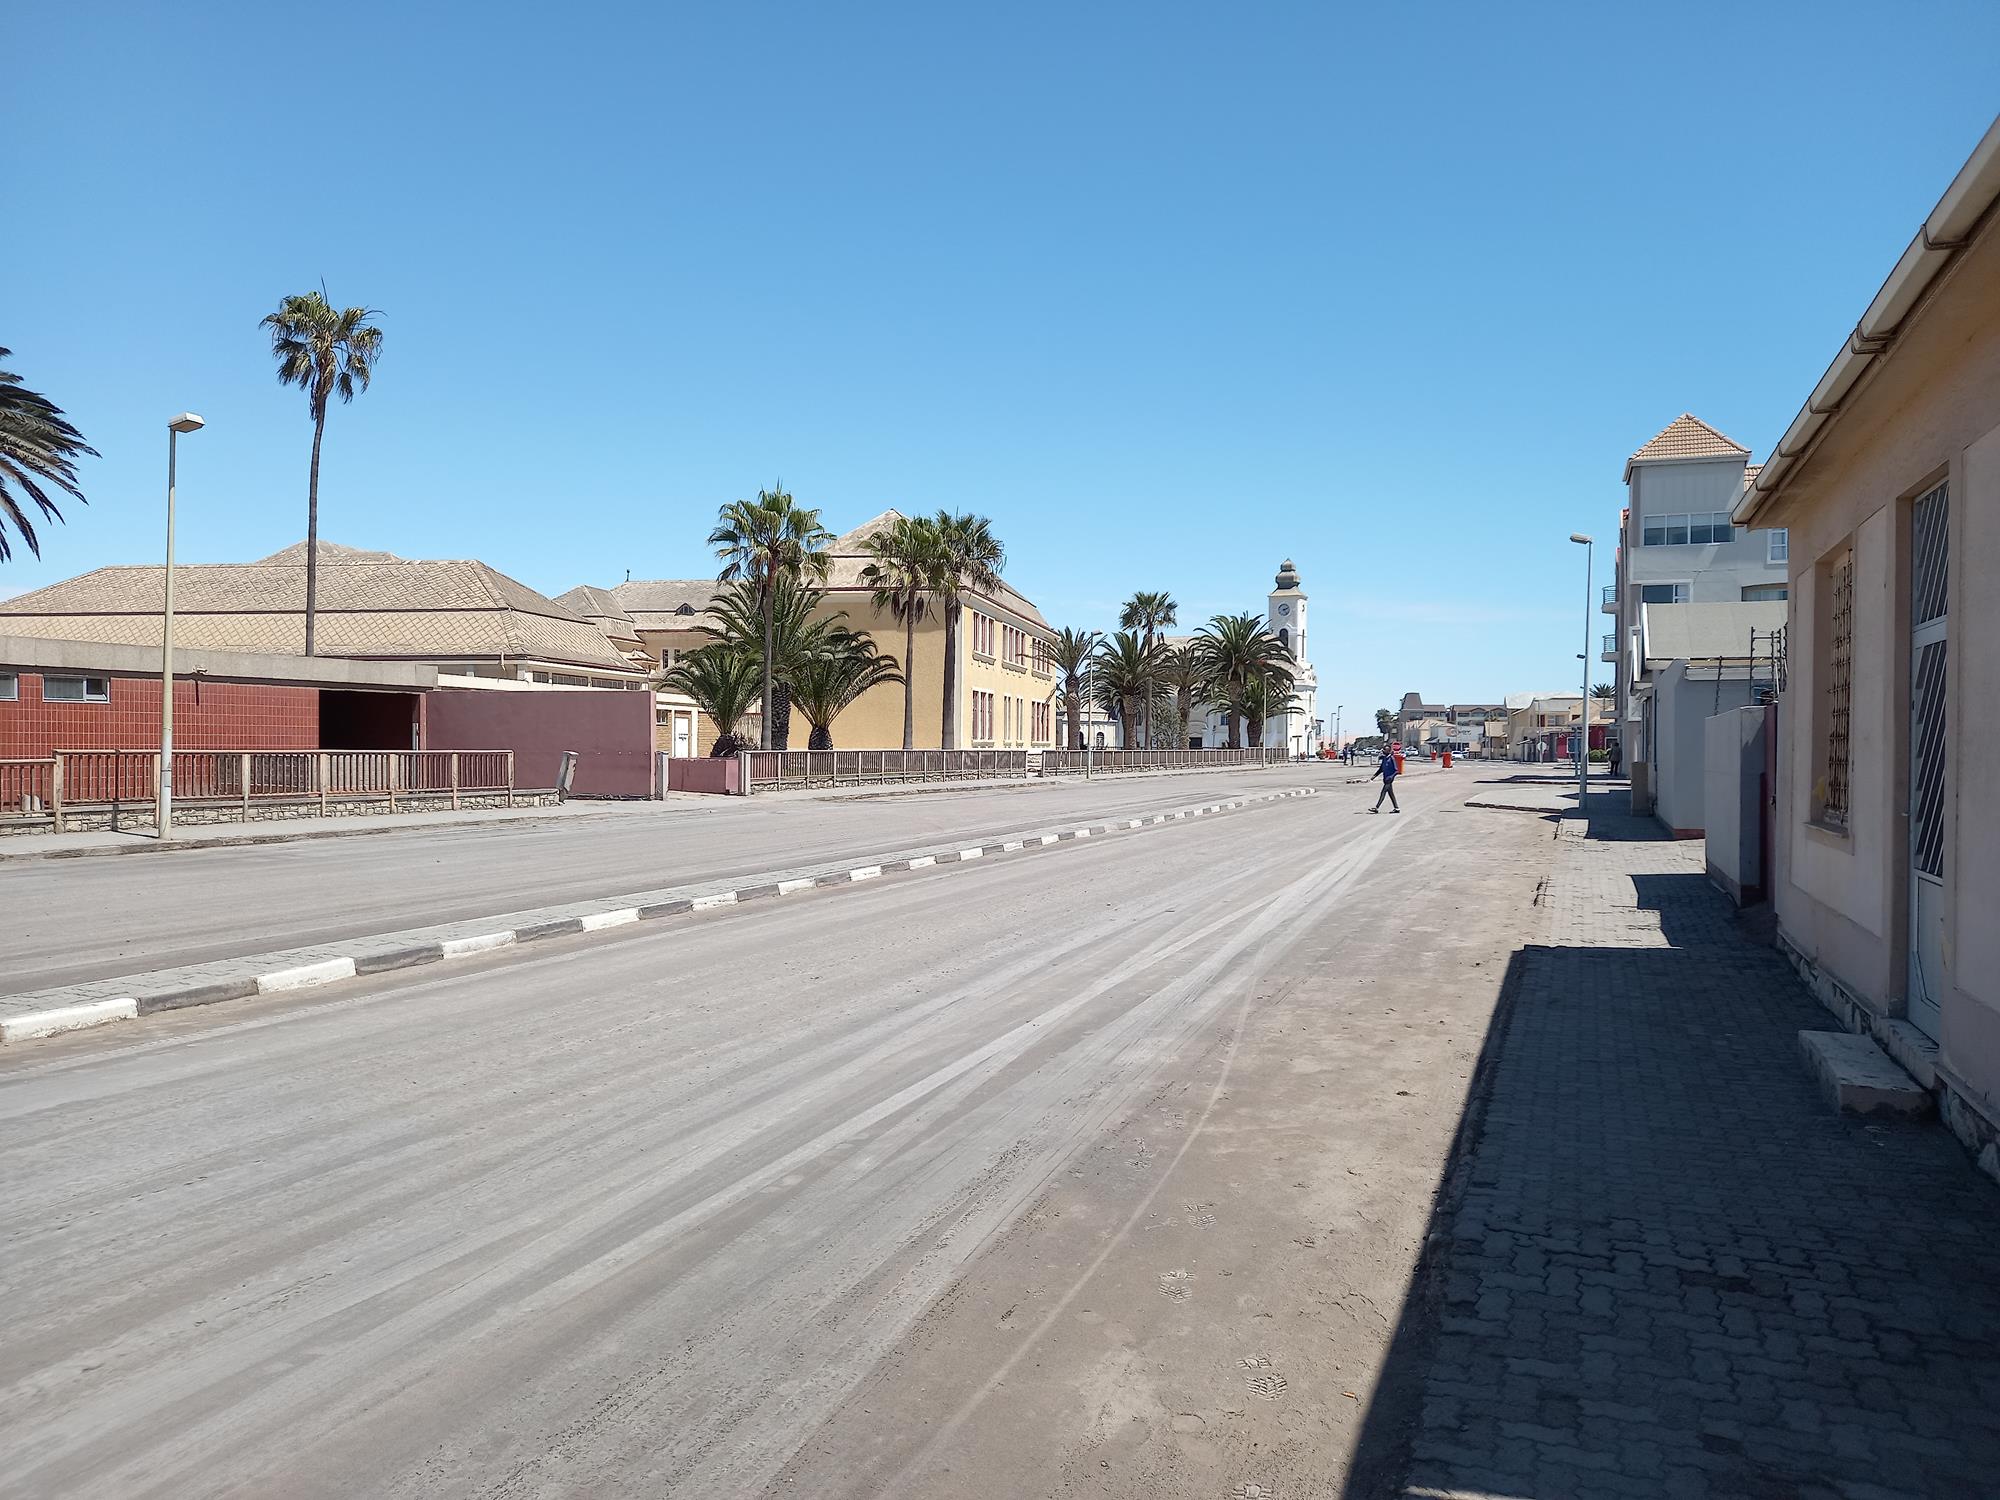 Nappal - Namíbia 2022 Swakopmund és környéke